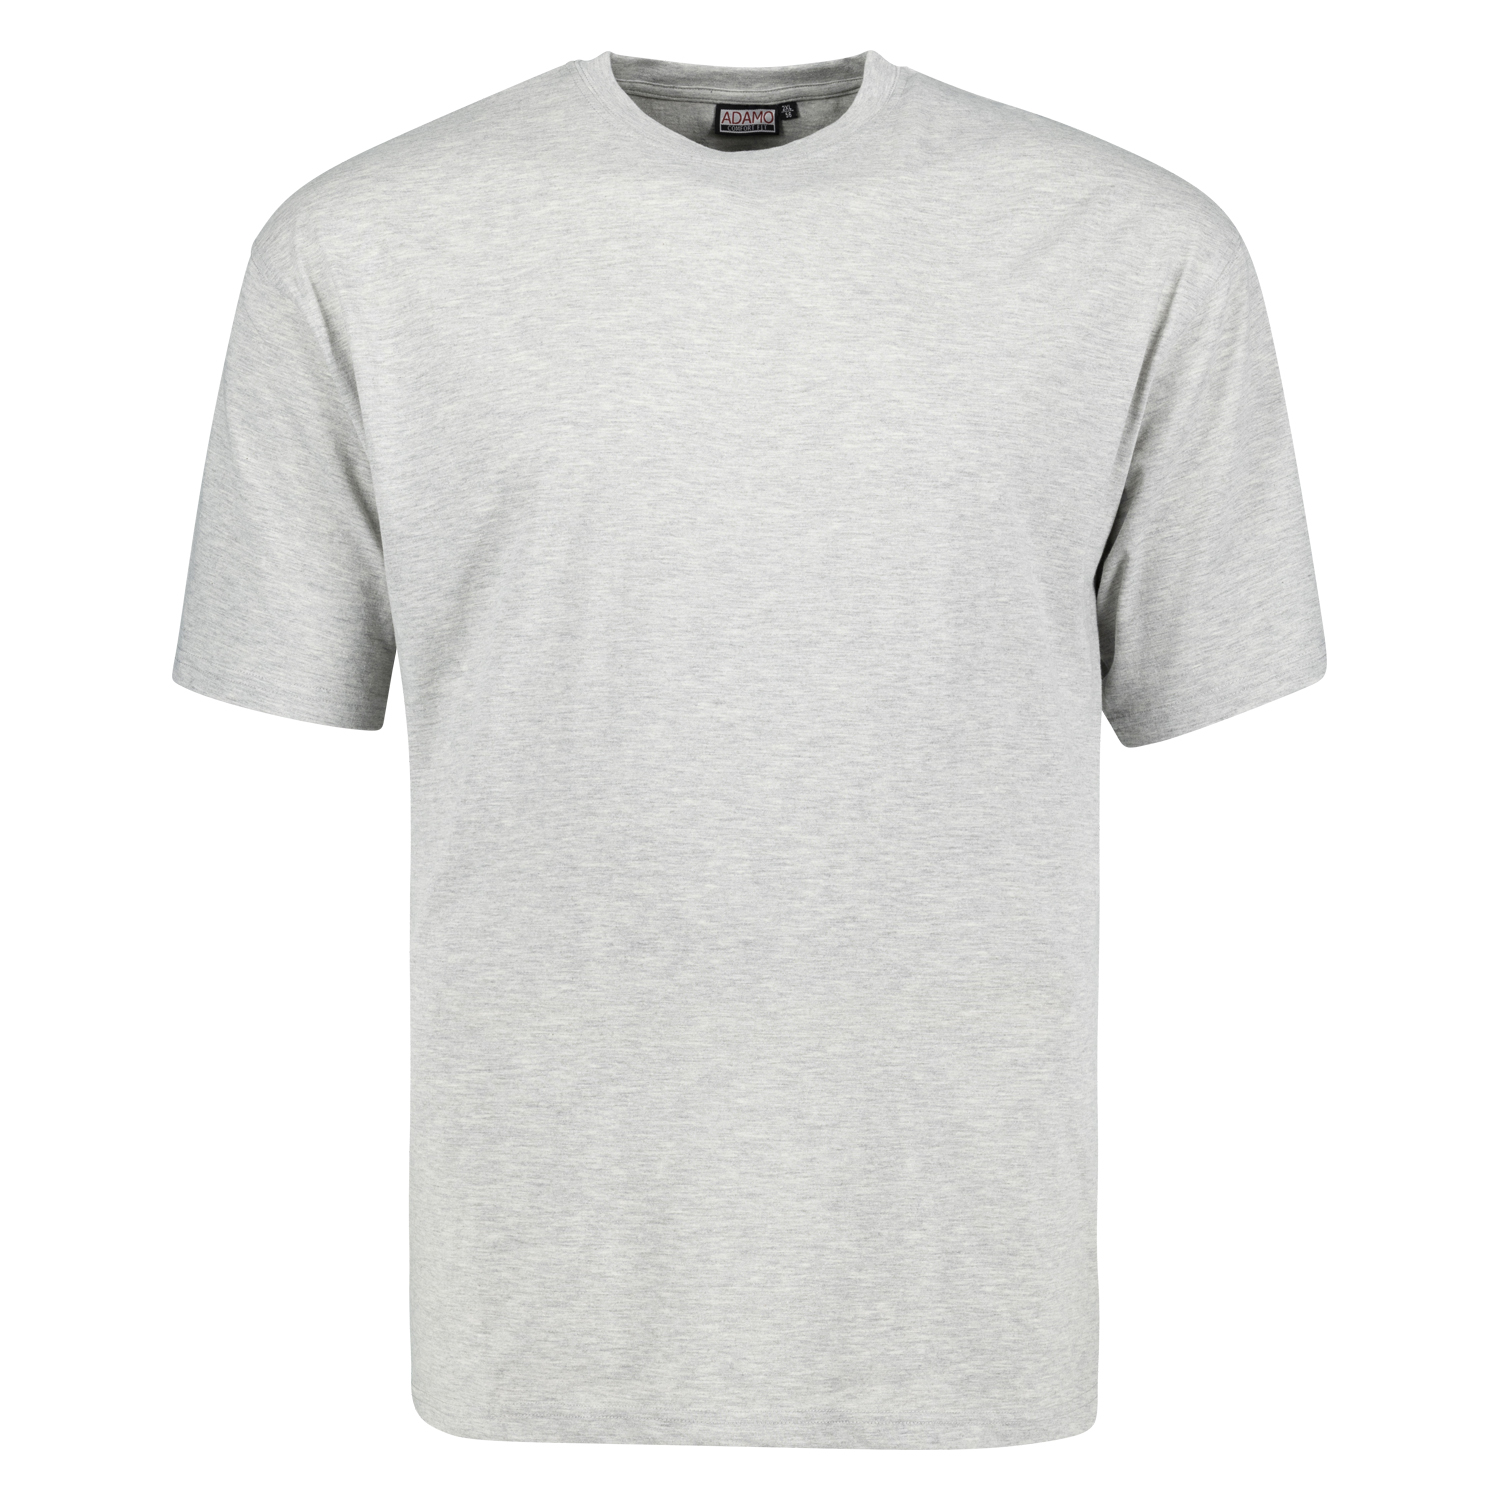 T-shirt gris chiné MARLON CONFORT FIT by ADAMO jusqu'à la taille 12XL - pack de deux